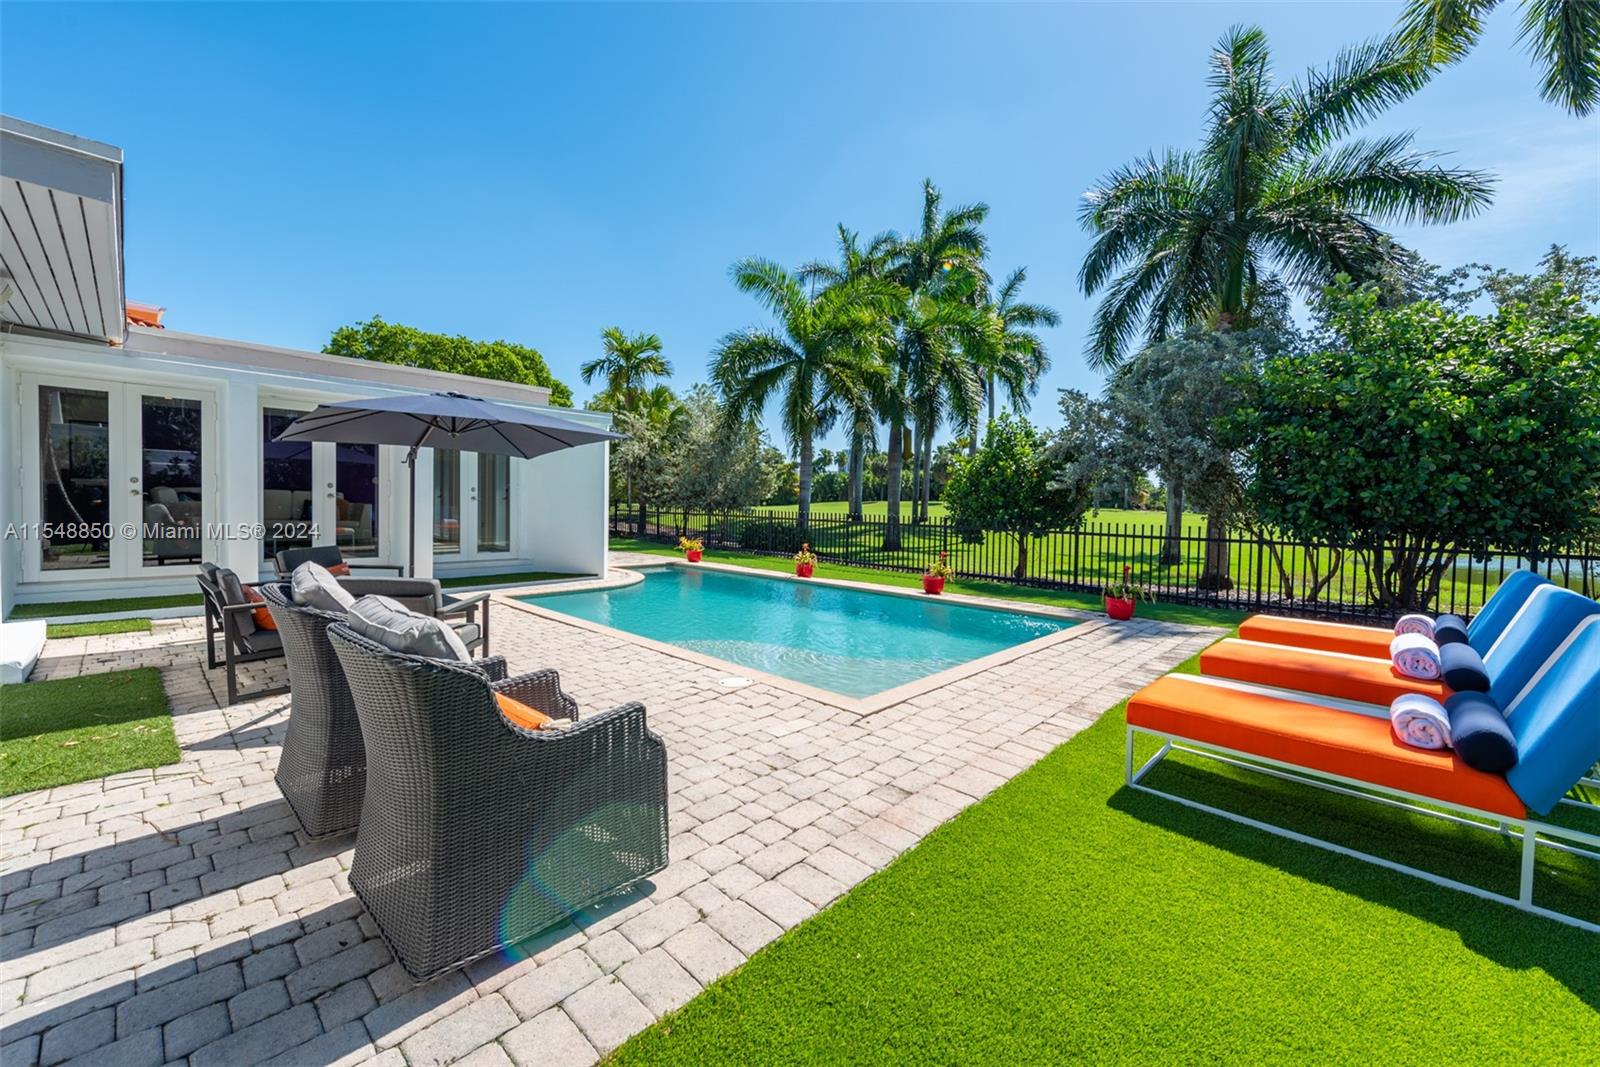 Property for Sale at 5301 Alton Rd, Miami Beach, Miami-Dade County, Florida - Bedrooms: 3 
Bathrooms: 3  - $2,205,000